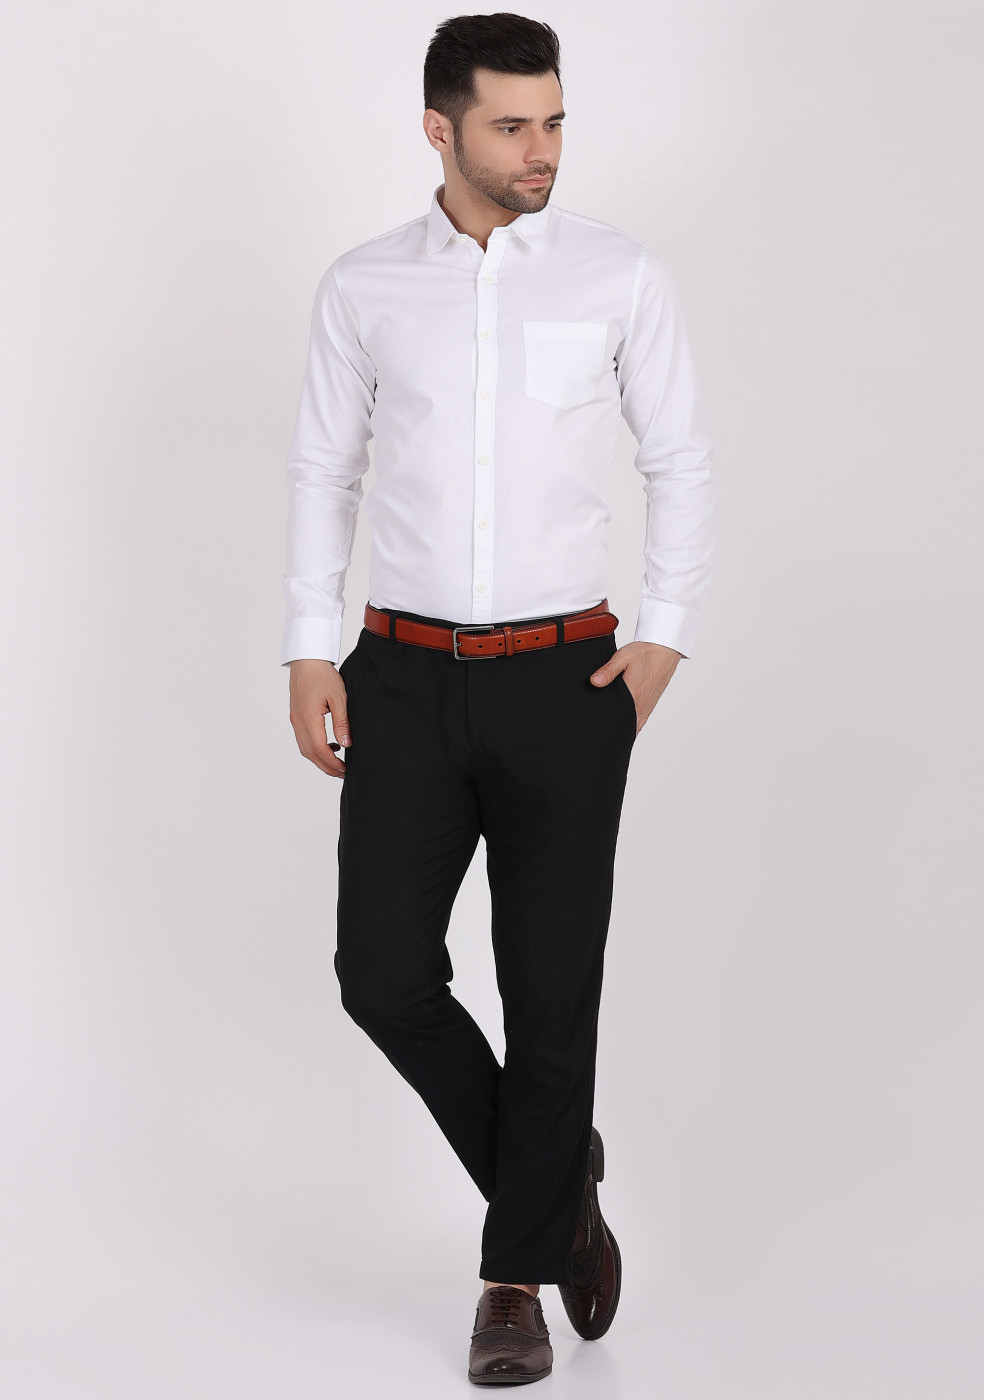 ASHTOM White Plain Formal Cotton Shirt For Men